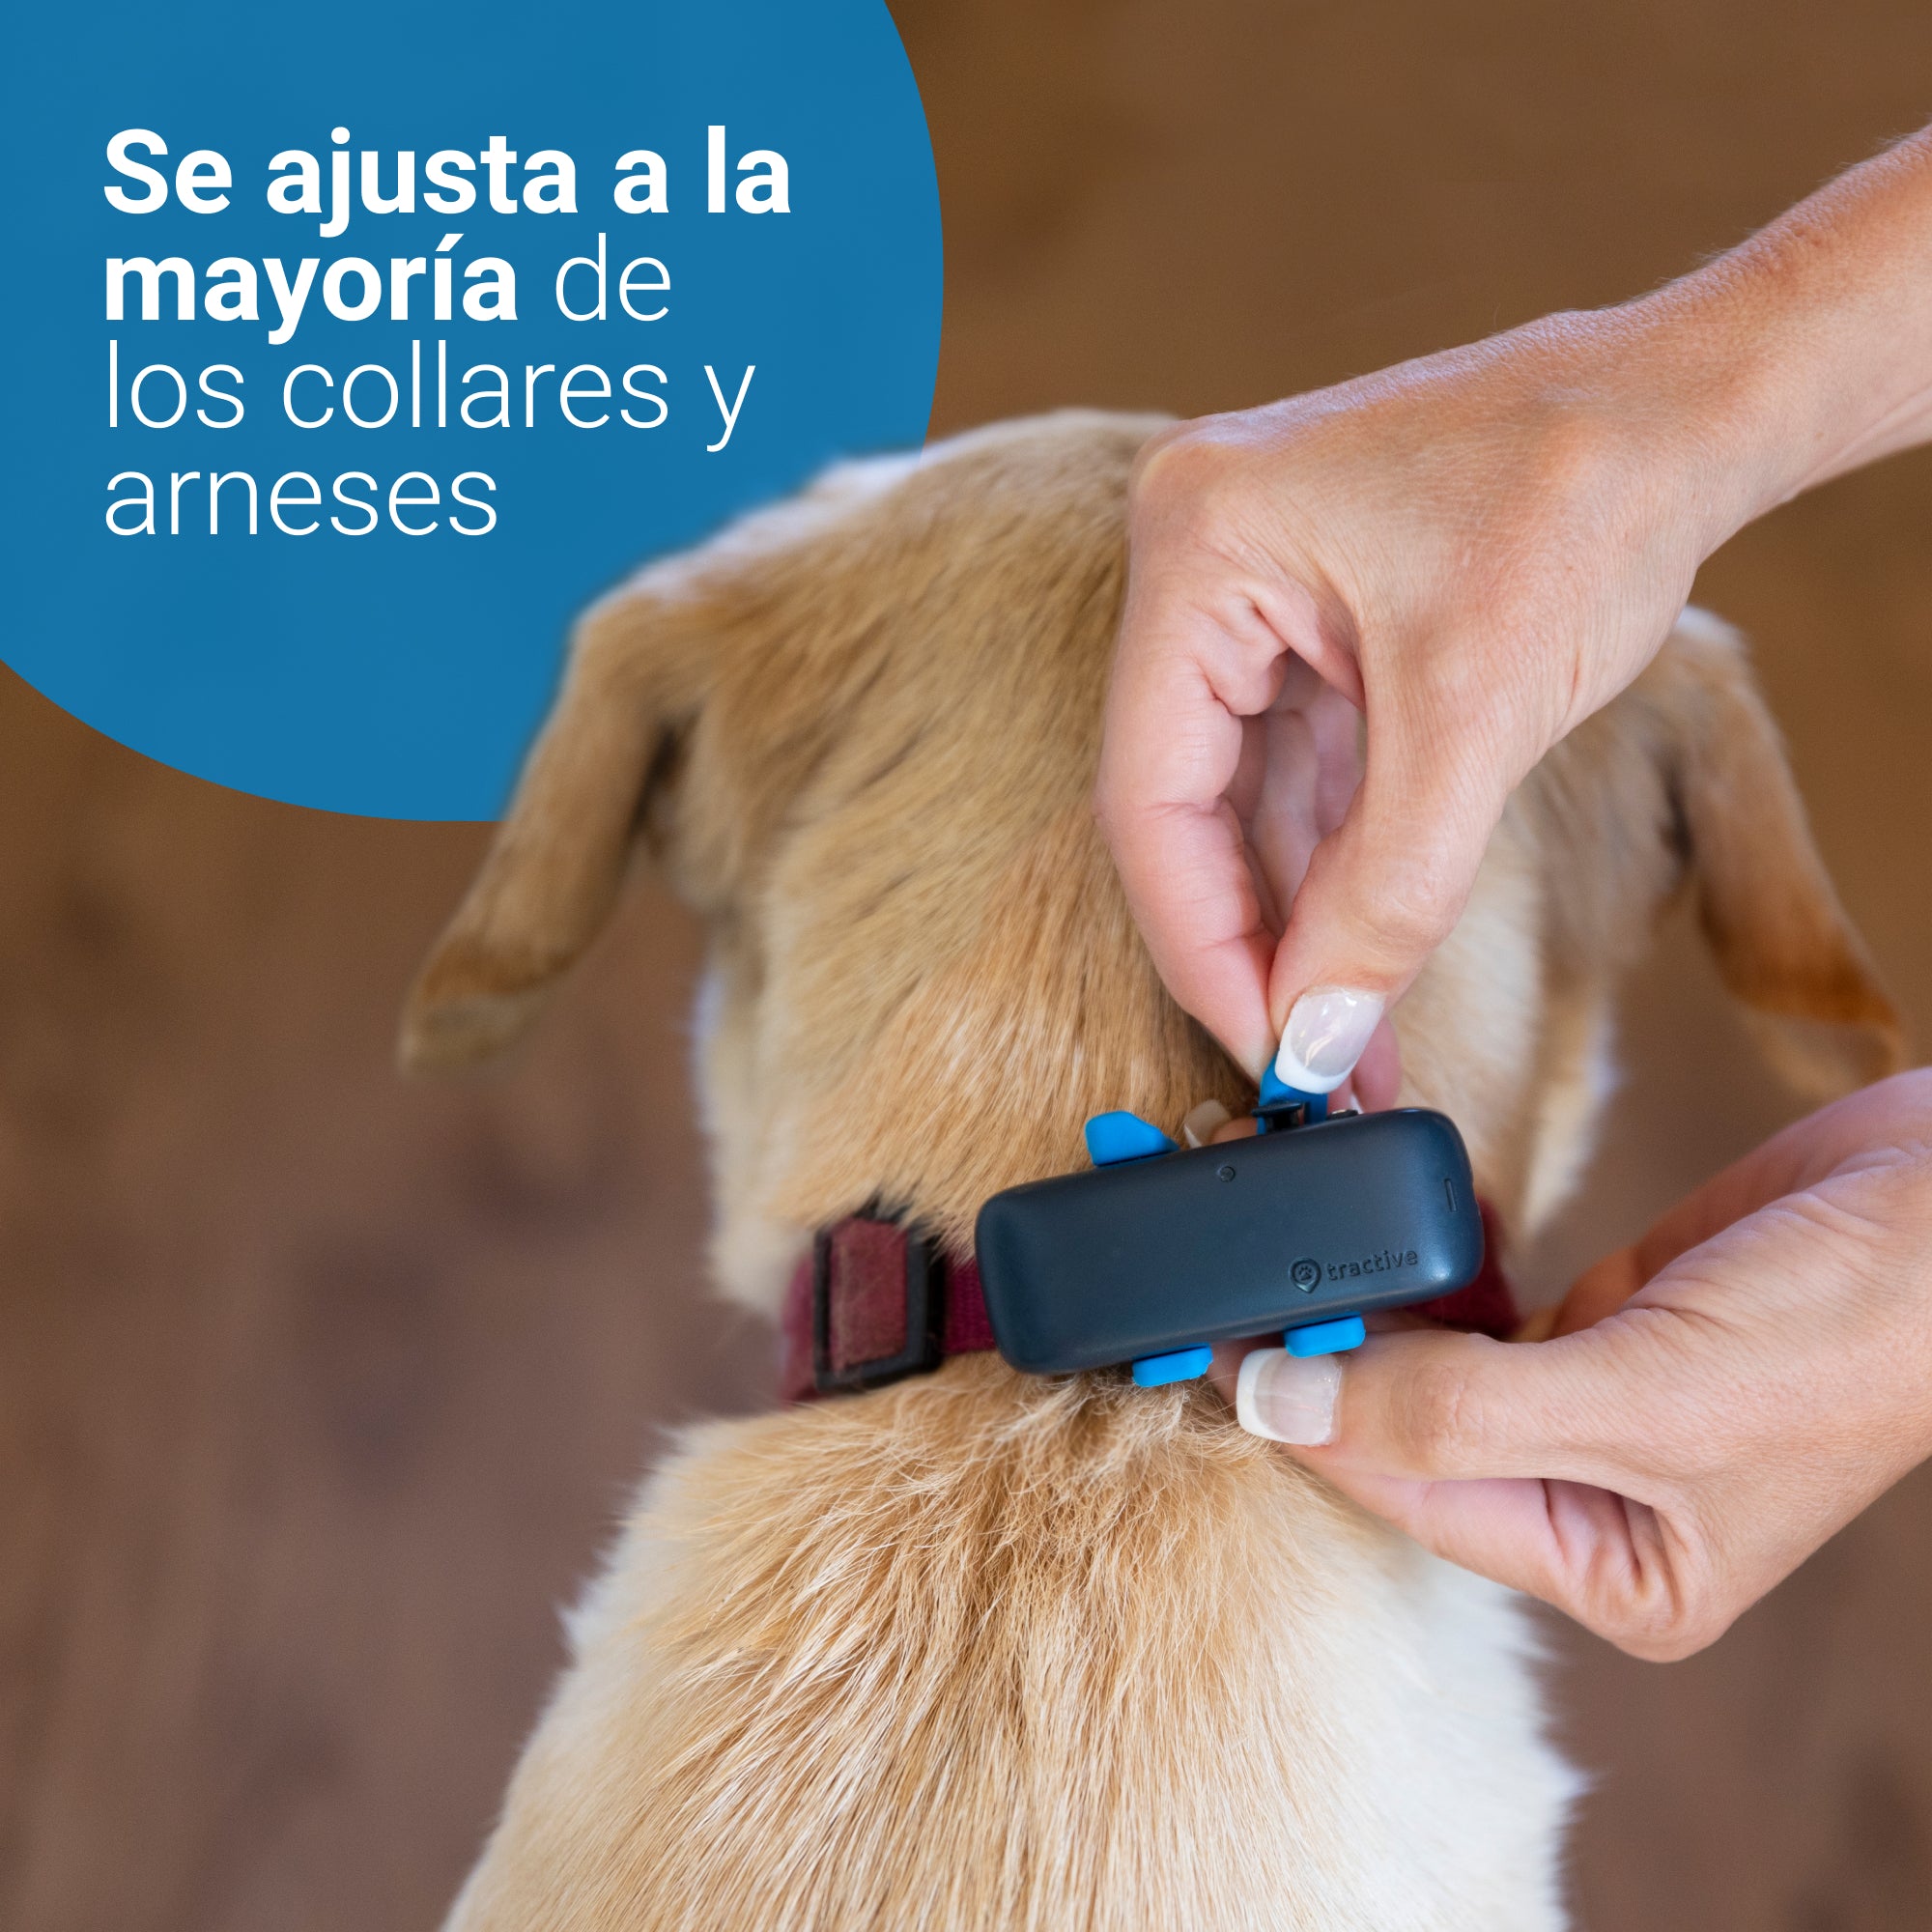 Tractive GPS DOG 4 - Collar GPS perros y seguimiento de actividad USADO